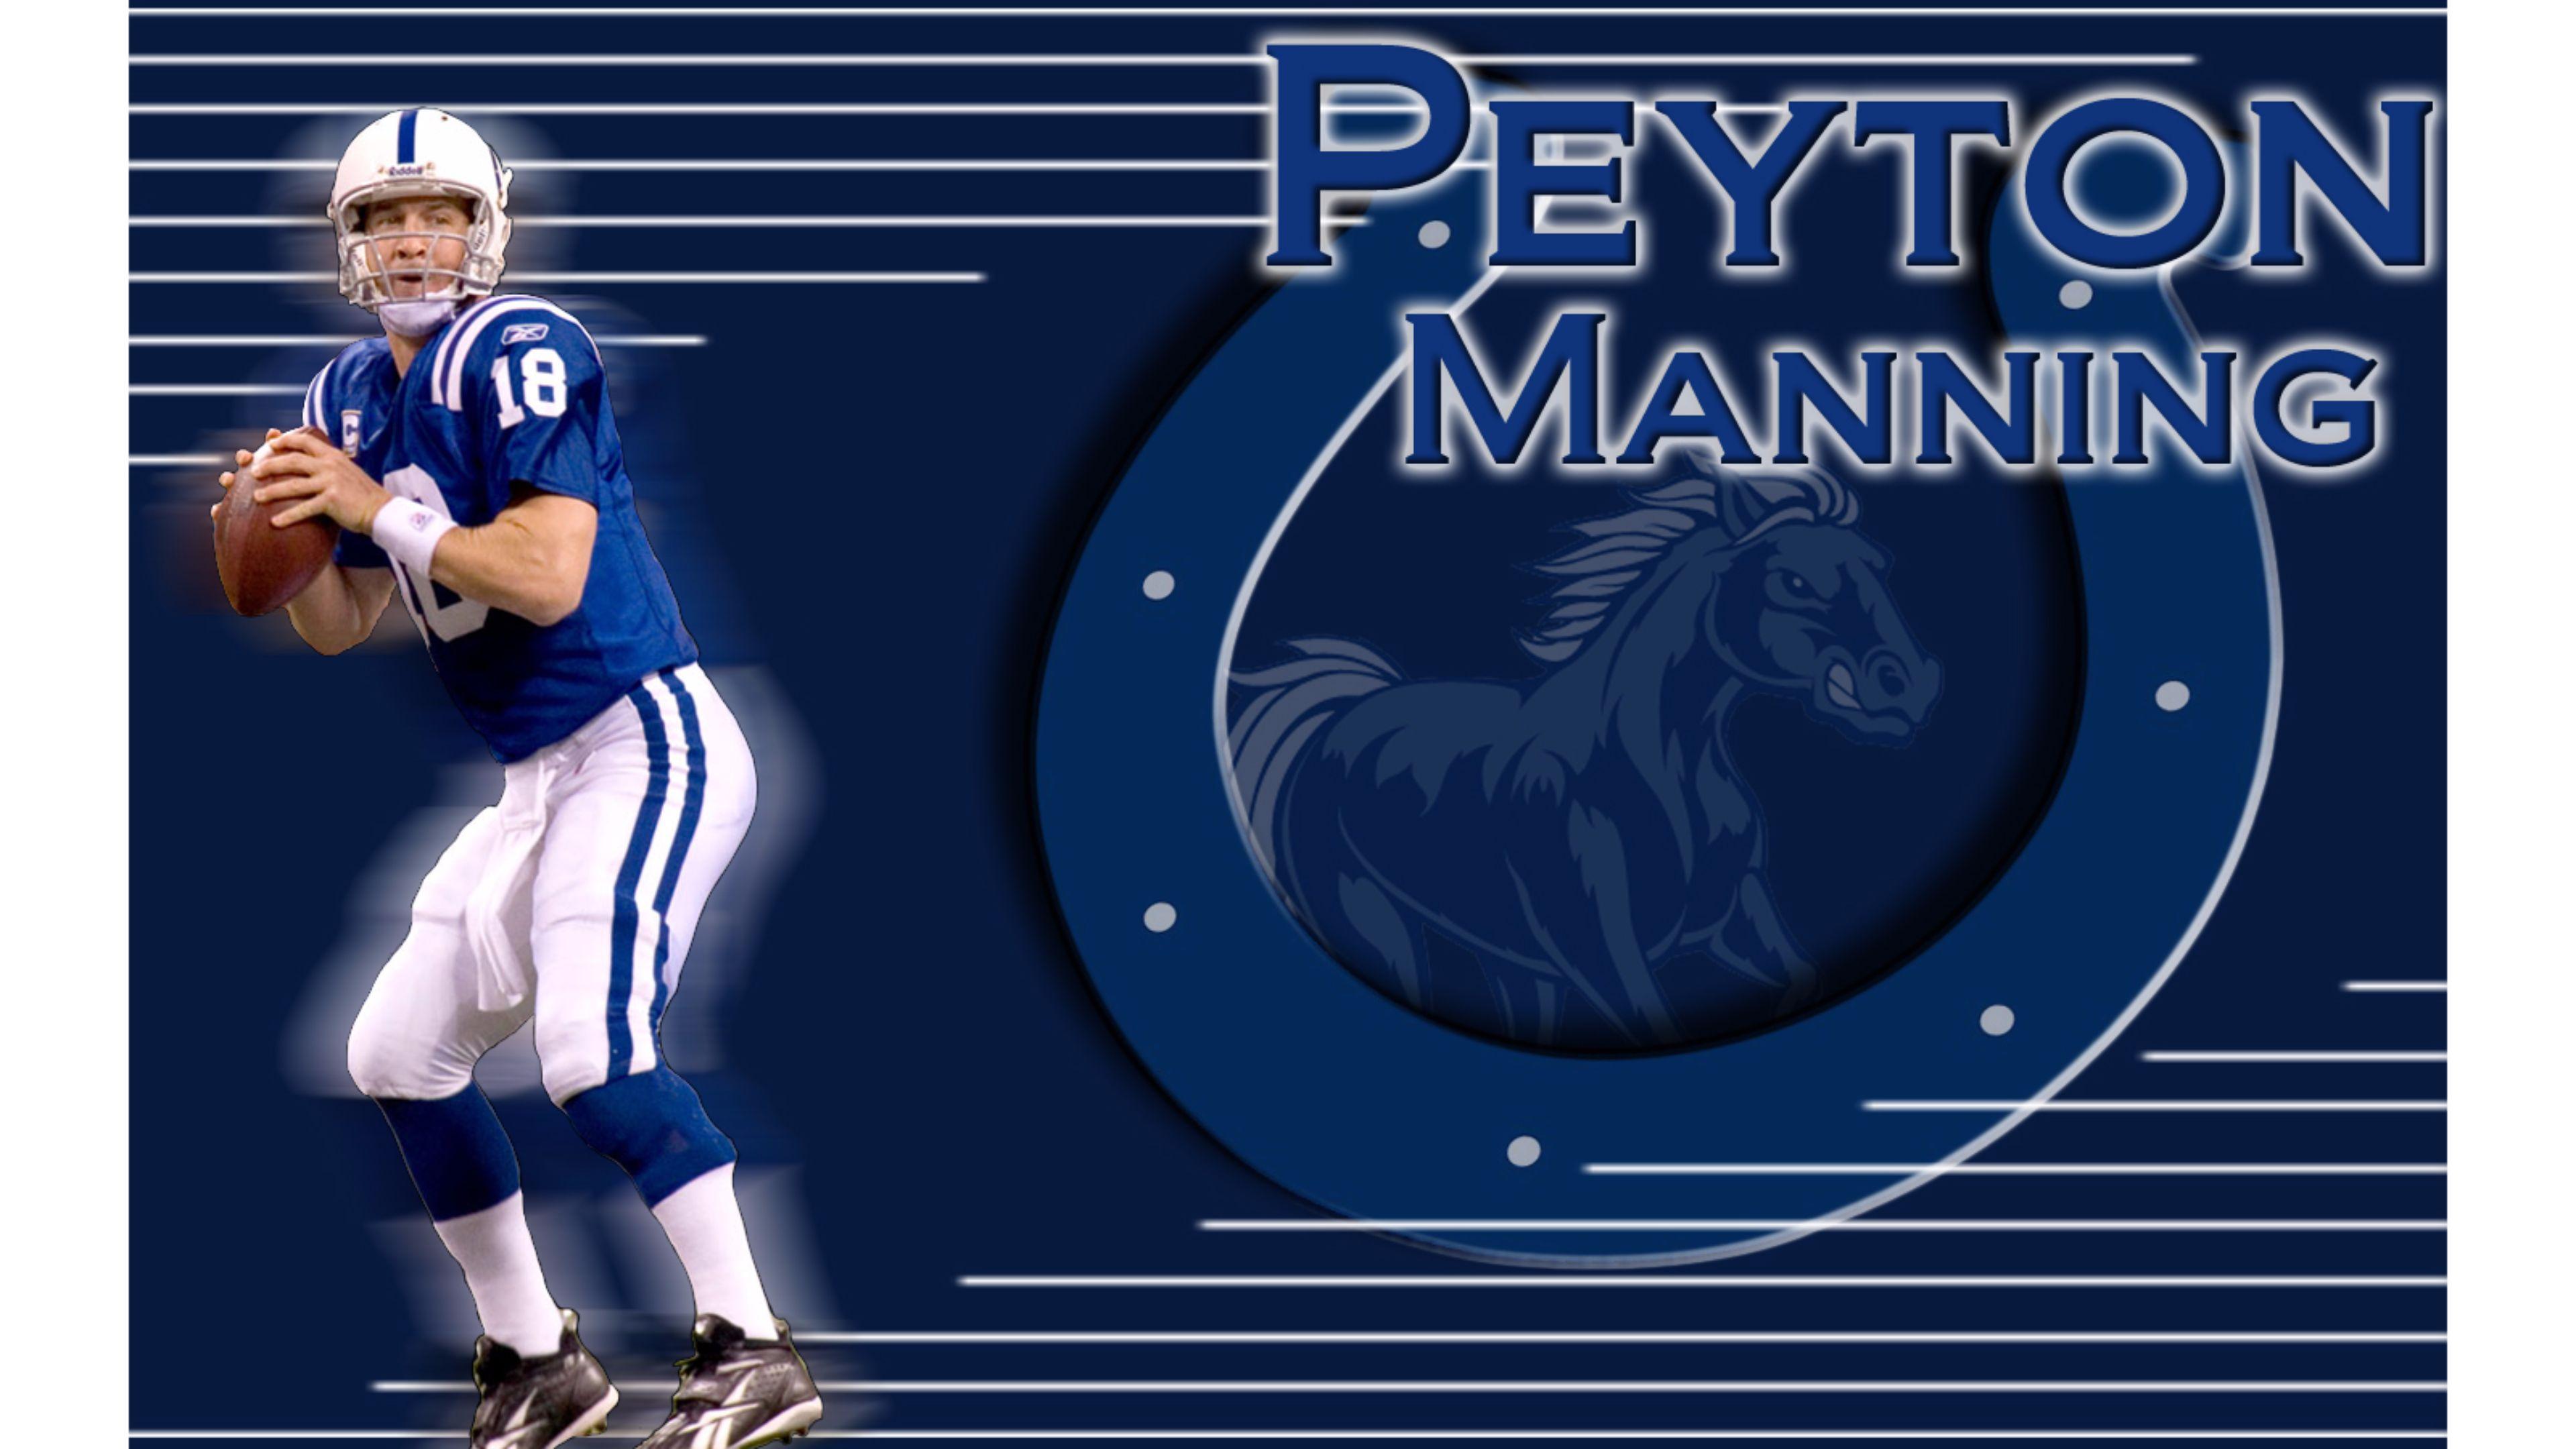 Indy Colts Peyton Manning 4K Wallpaper. Free 4K Wallpaper